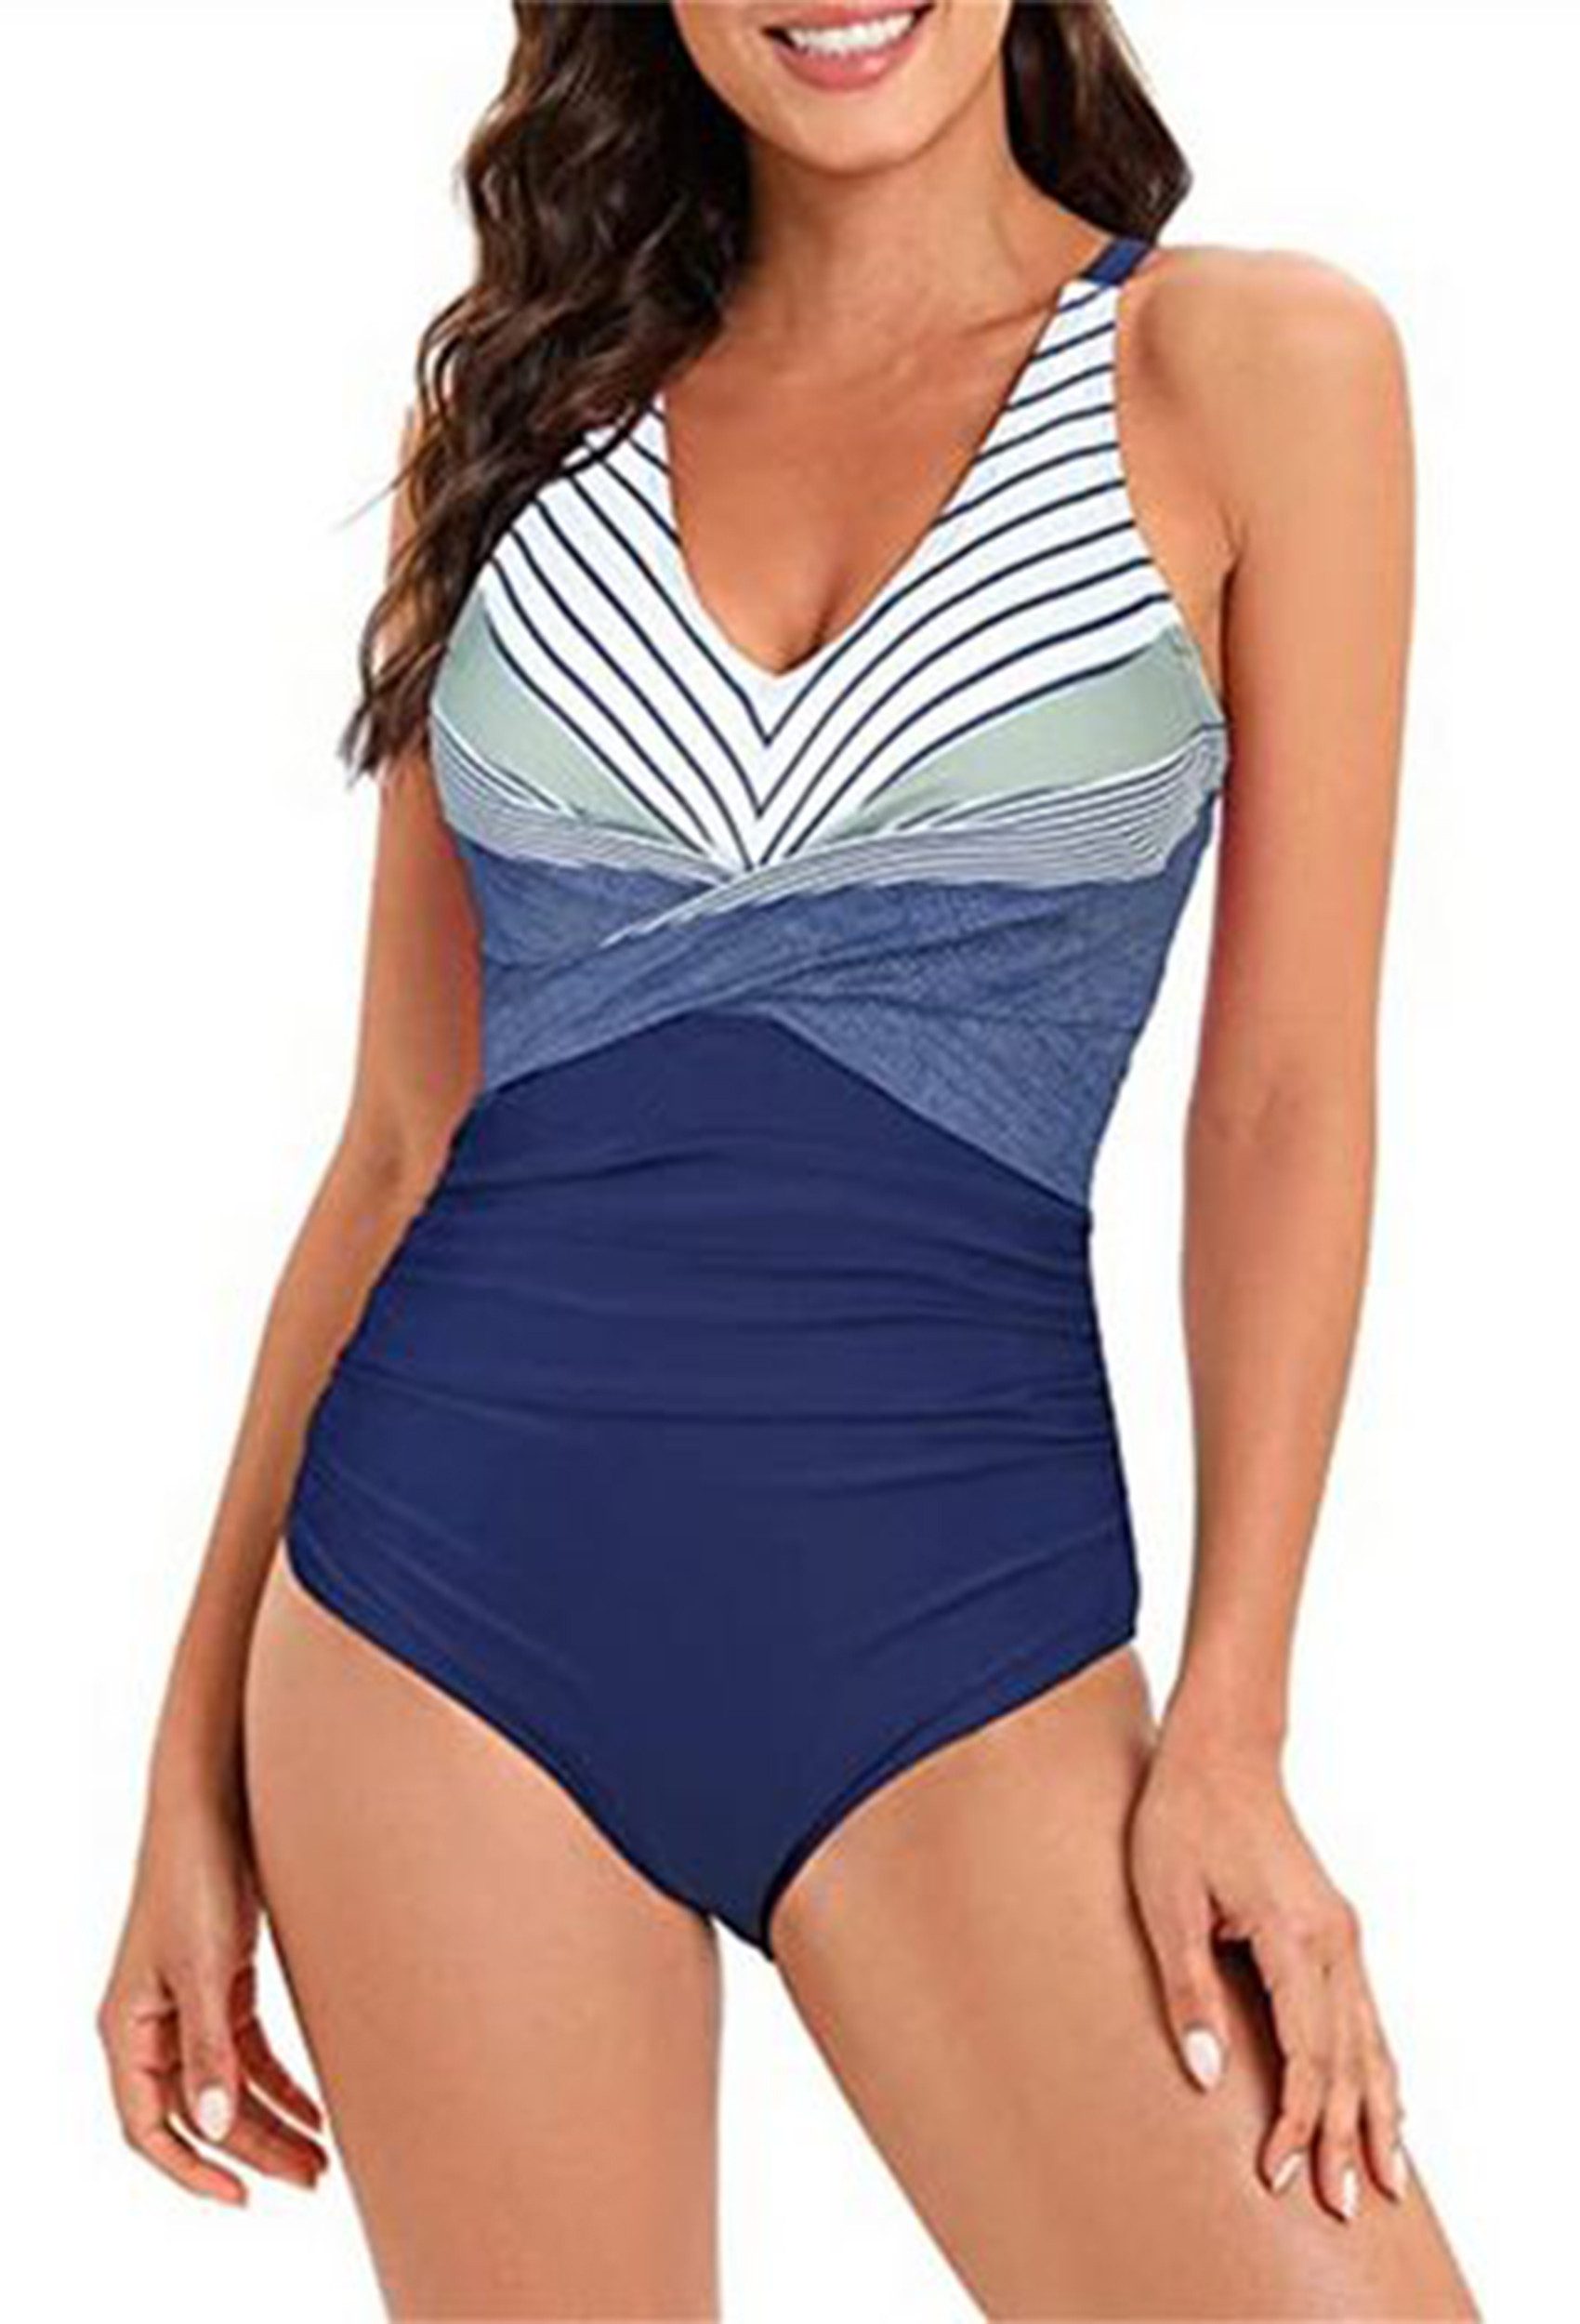 HOTDUCK Bandeau-Bikini Einteiliger Damenbadeanzug mit Colour-Blocking das Strandschwimmen